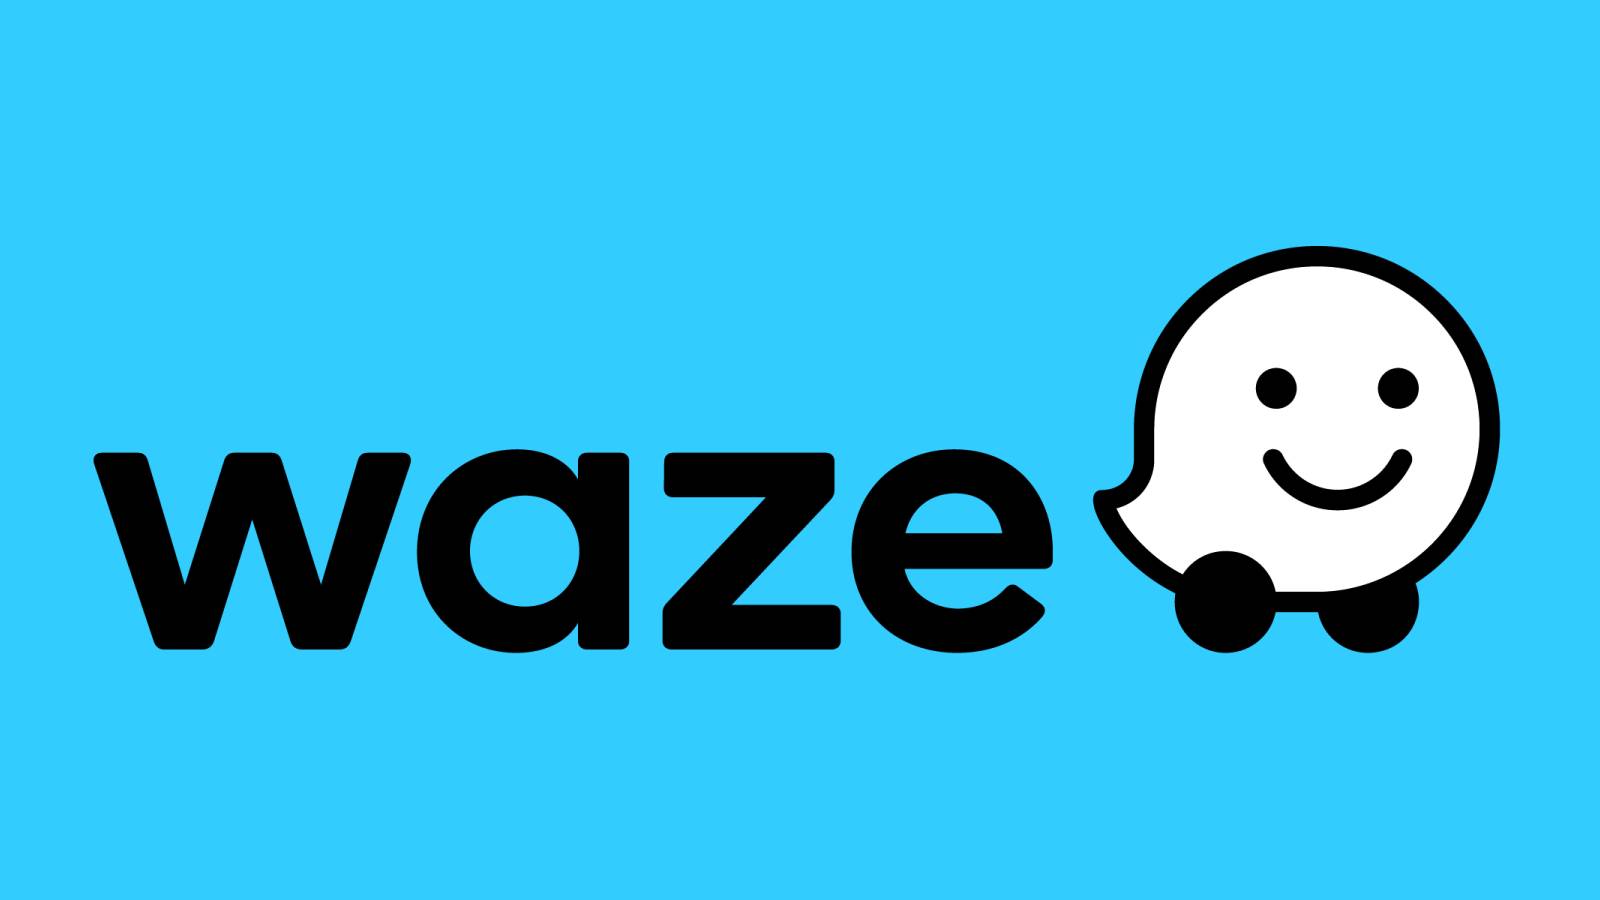 Waze Update vine cu Noutati Bune pentru Telefoane Astazi